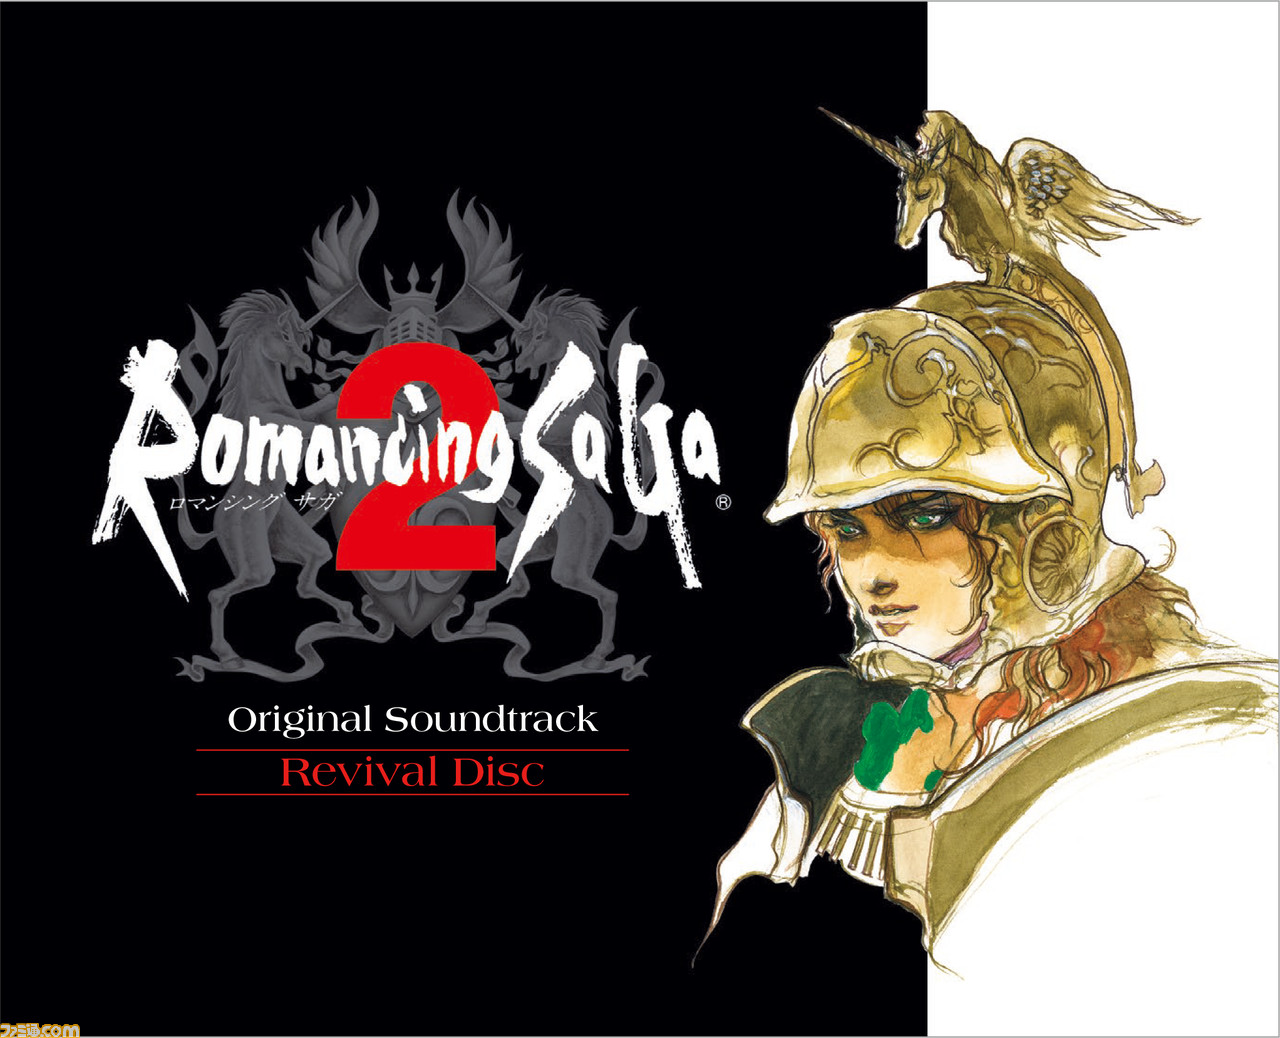 ロマサガ2 全36曲を収録した映像付のサントラが年1月29日に発売決定 皇帝継承の歴史を 目と耳で楽しめる ファミ通 Com